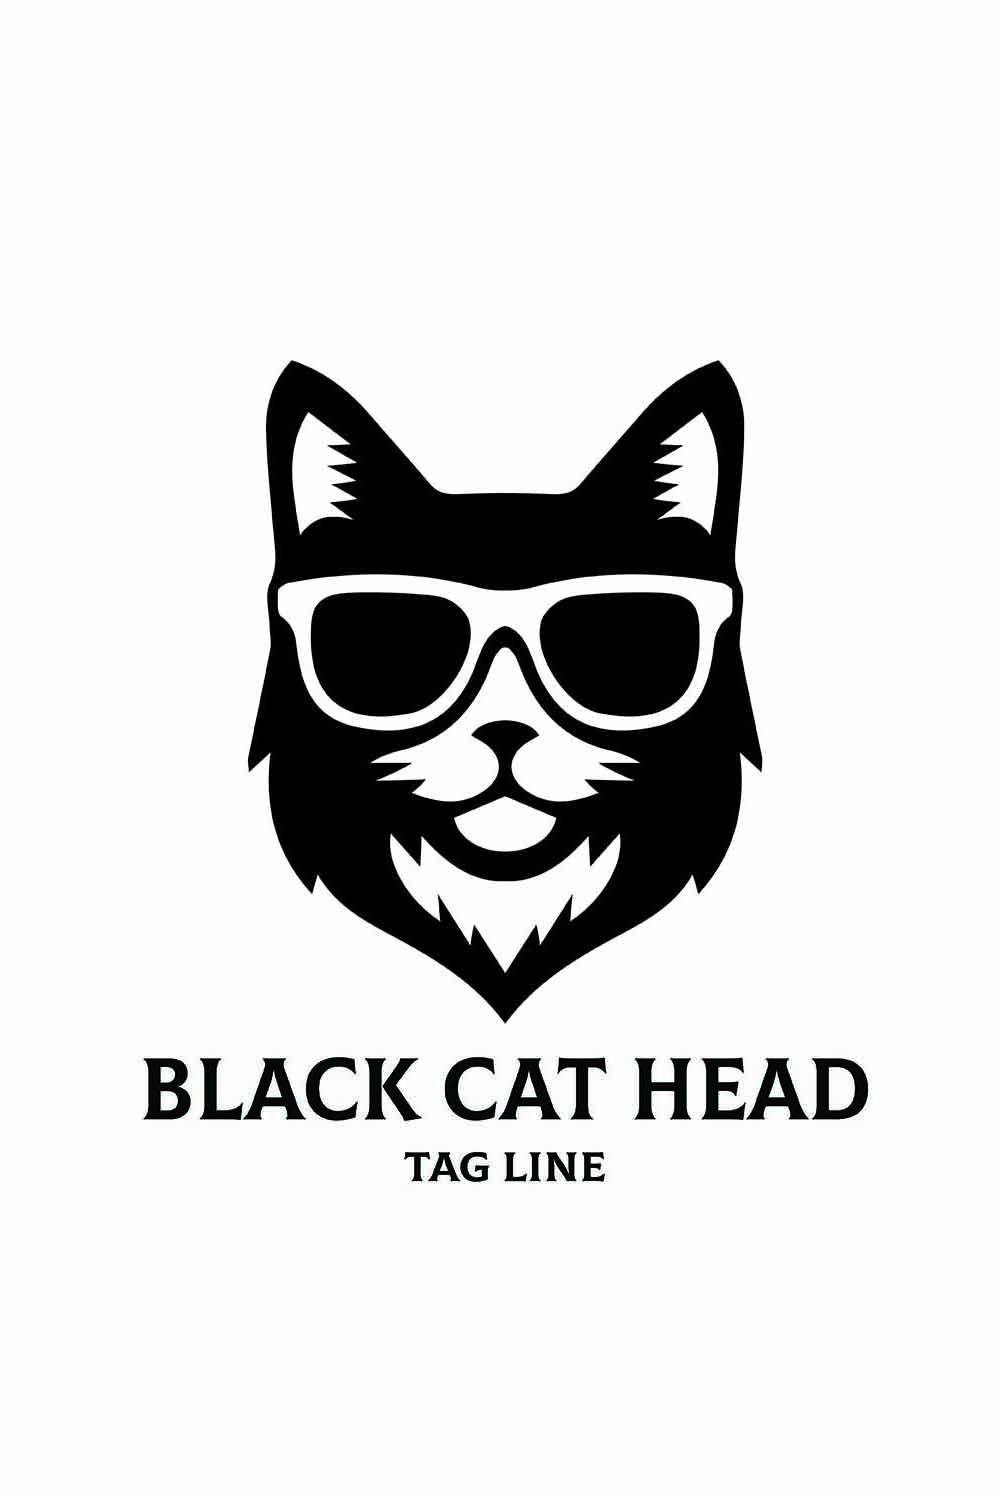 Black Cat logo by Marvel-Heroes-Revive on DeviantArt